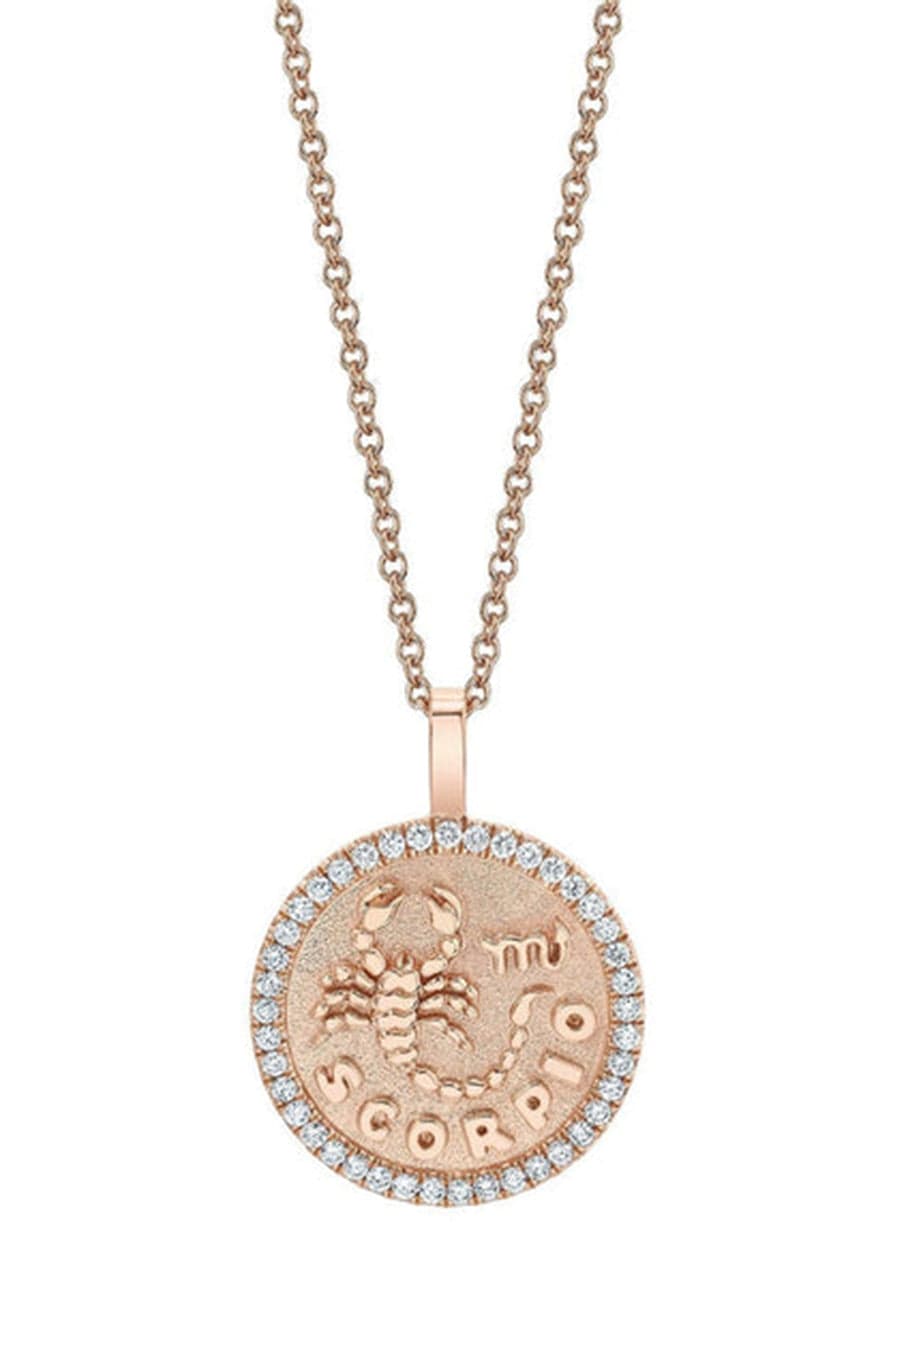 ANITA KO-Scorpio Zodiac Coin Pendant Necklace-ROSE GOLD